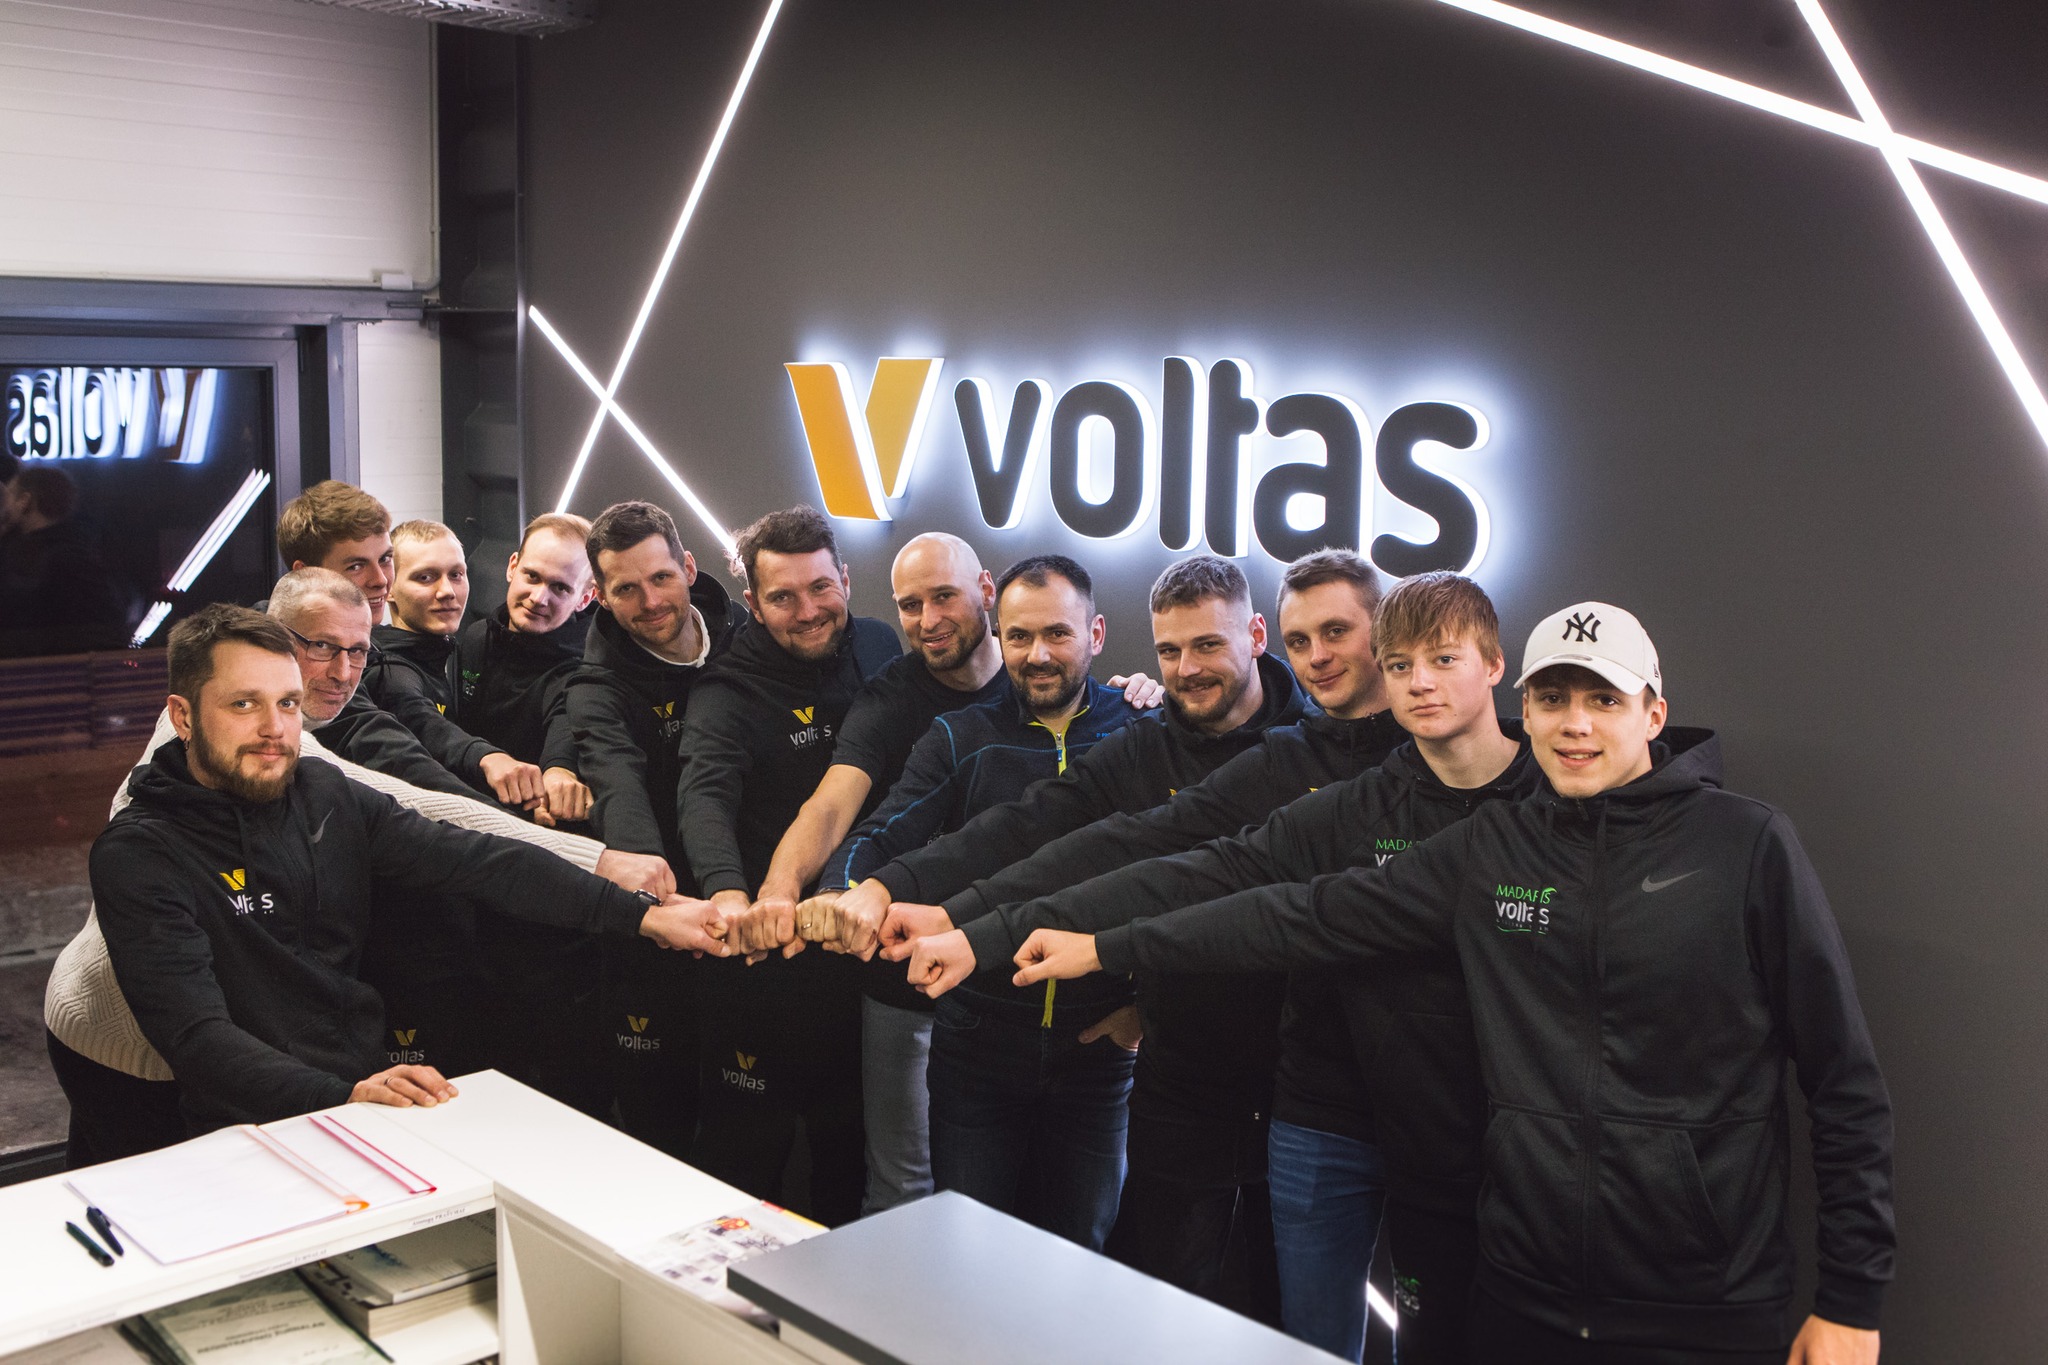 Latvijas vicečempions daudzdienās Beļajevs pievienojas “Voltas – Madaris” vienībai